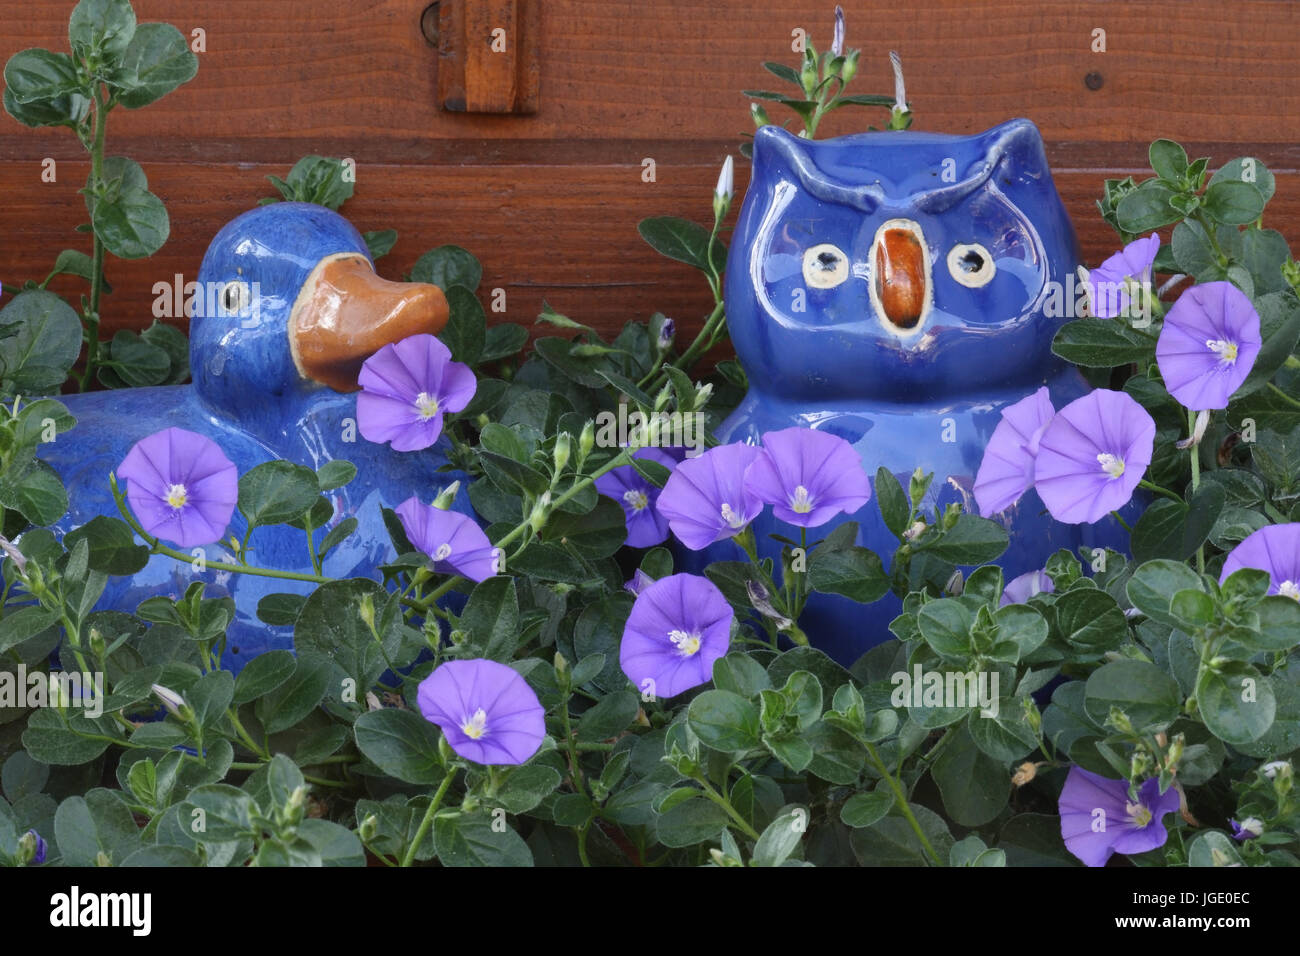 Maurizio blu con giardino figure, Blaue Mauritius mit Gartenfiguren Foto Stock